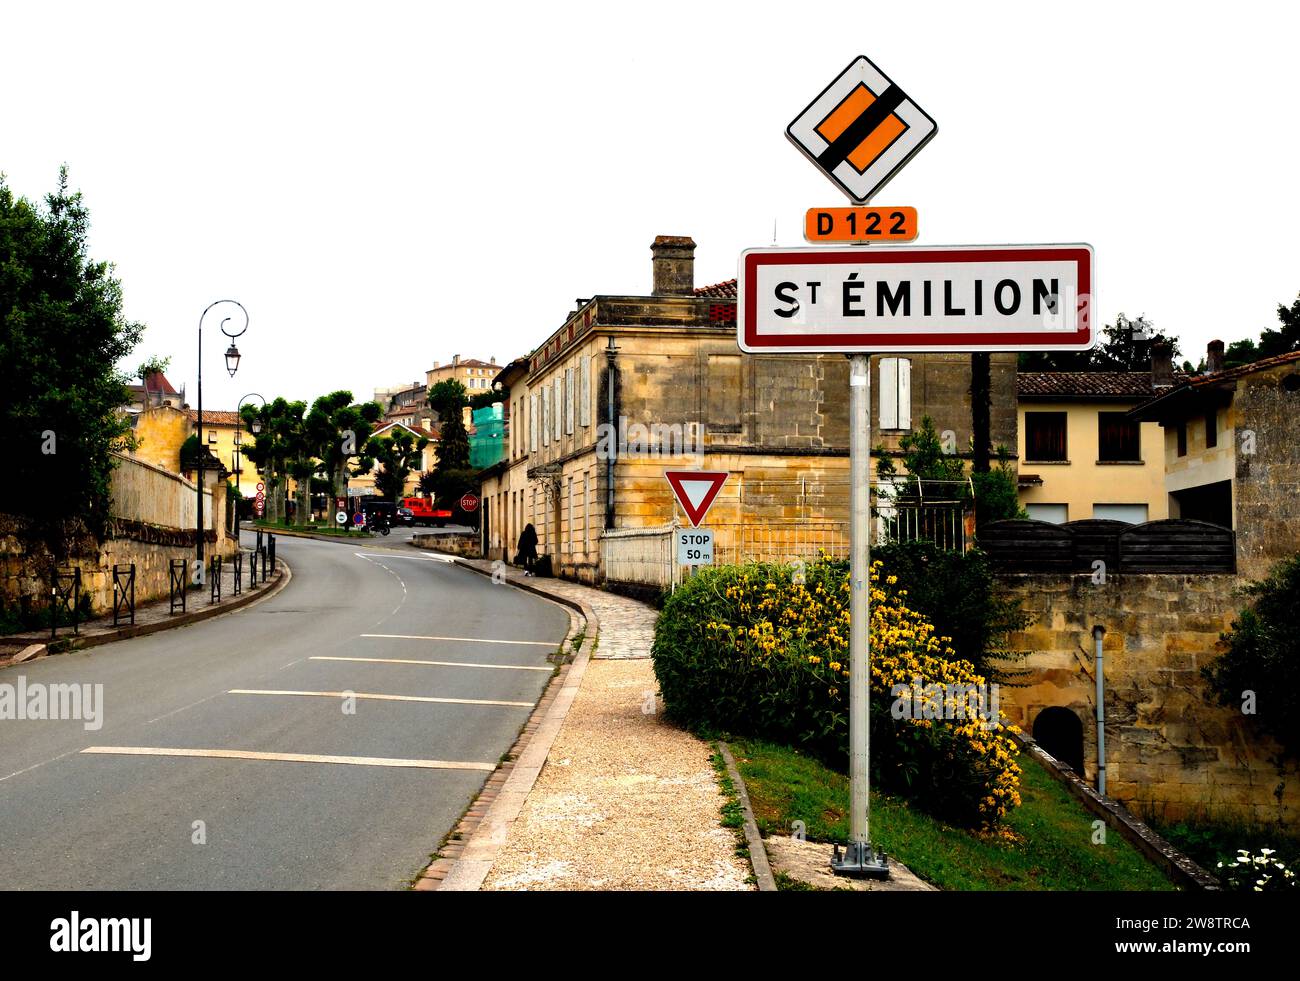 La città medievale di St Emilion nel dipartimento della Gironda, nel sud-ovest della Francia Foto Stock